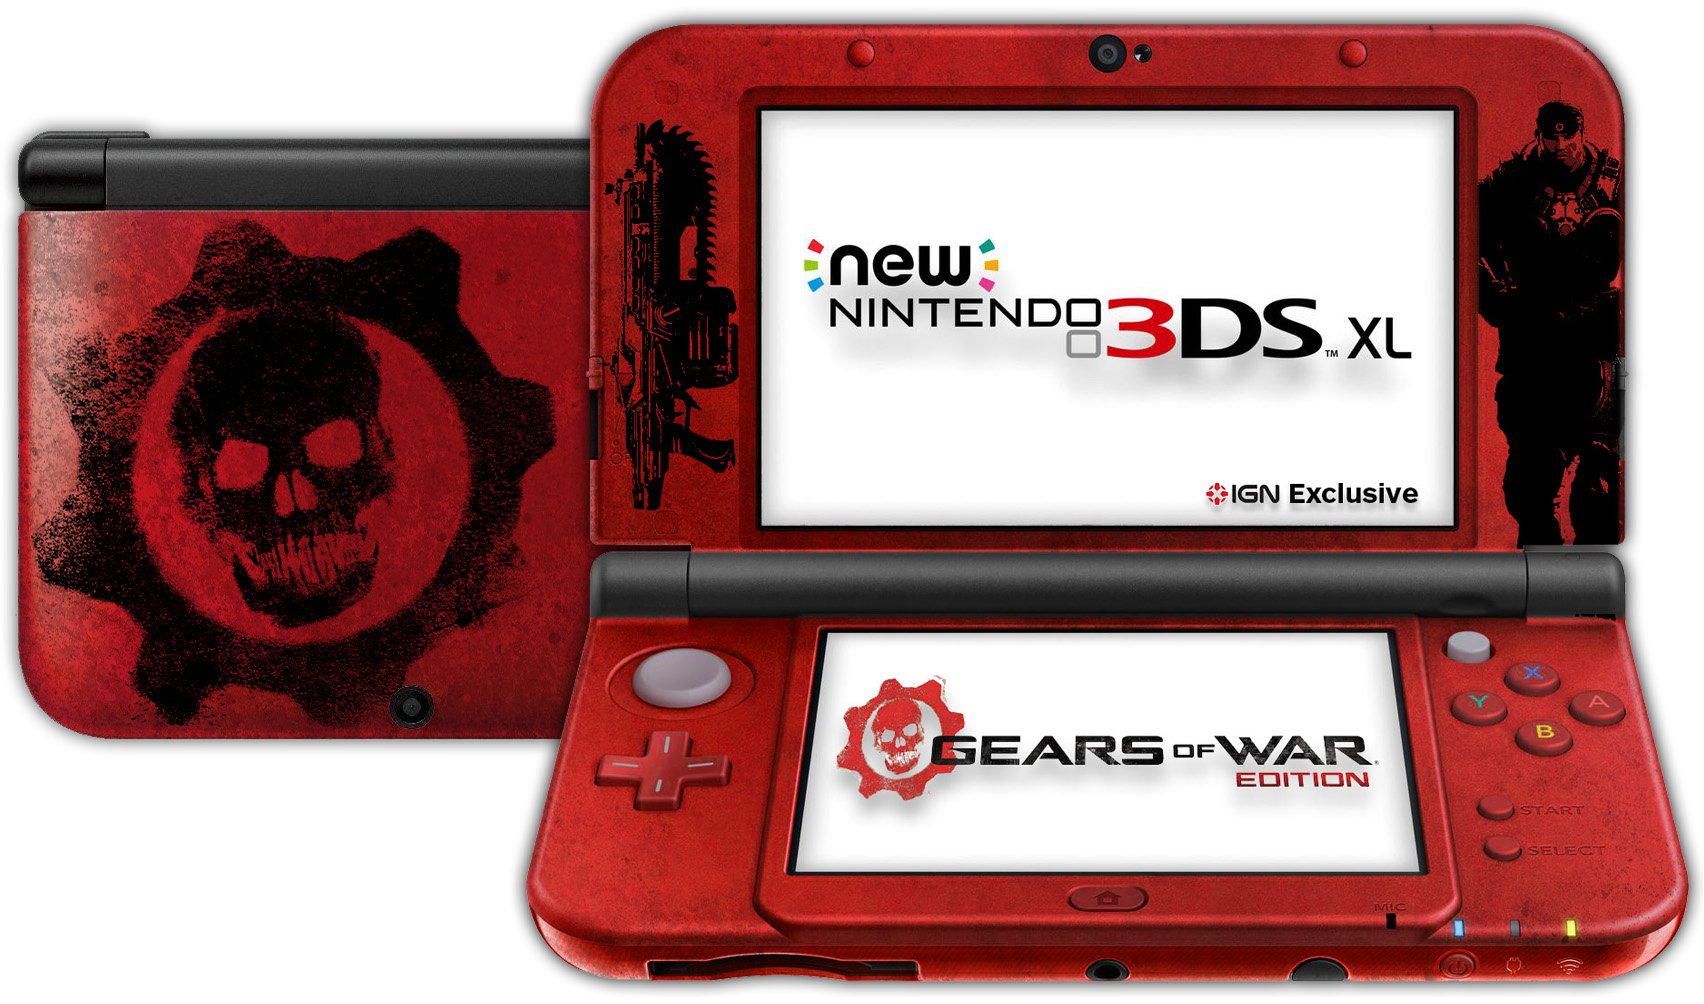 Gears of War 4 - IGN